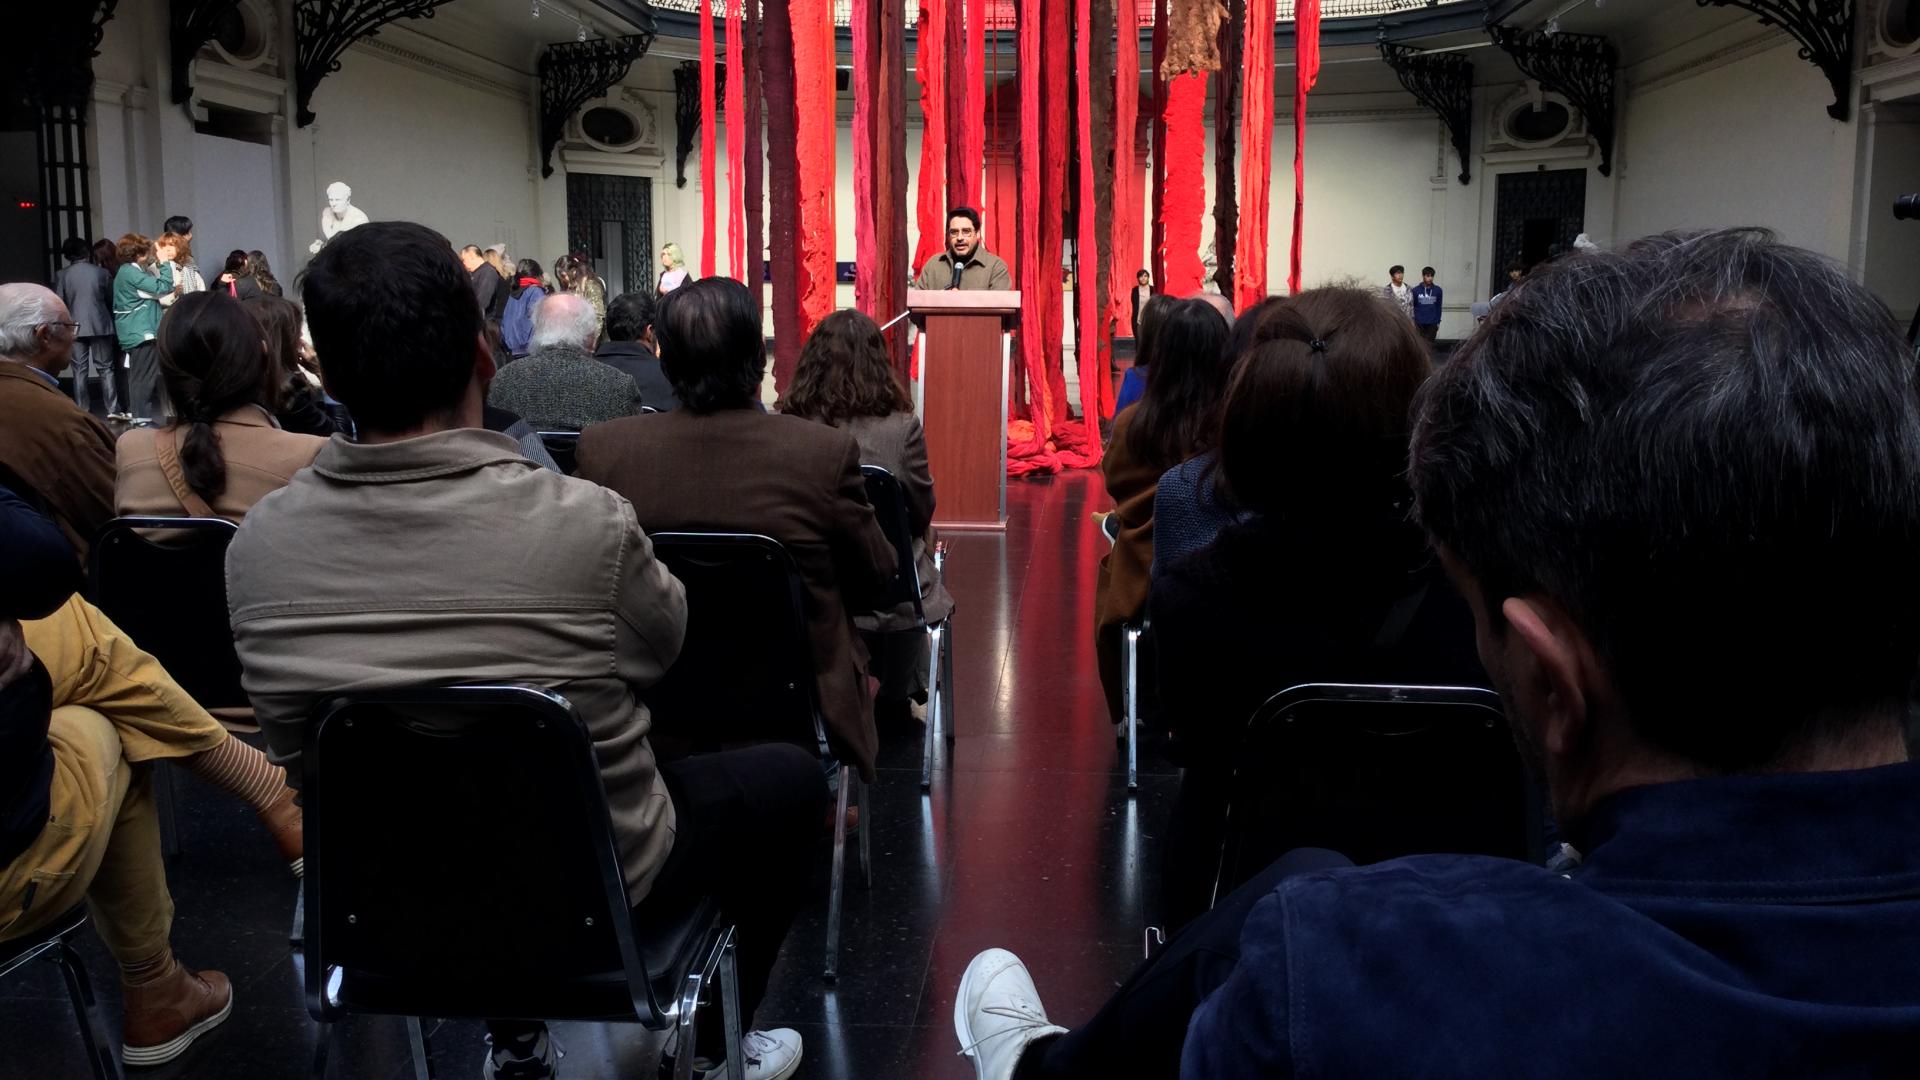 El curador Sebastián Vidal Valenzuela dando un discurso, detrás de él se pueden ver telas colgadas de colores rojo y café. Frente a él hay personas sentadas observandolo.